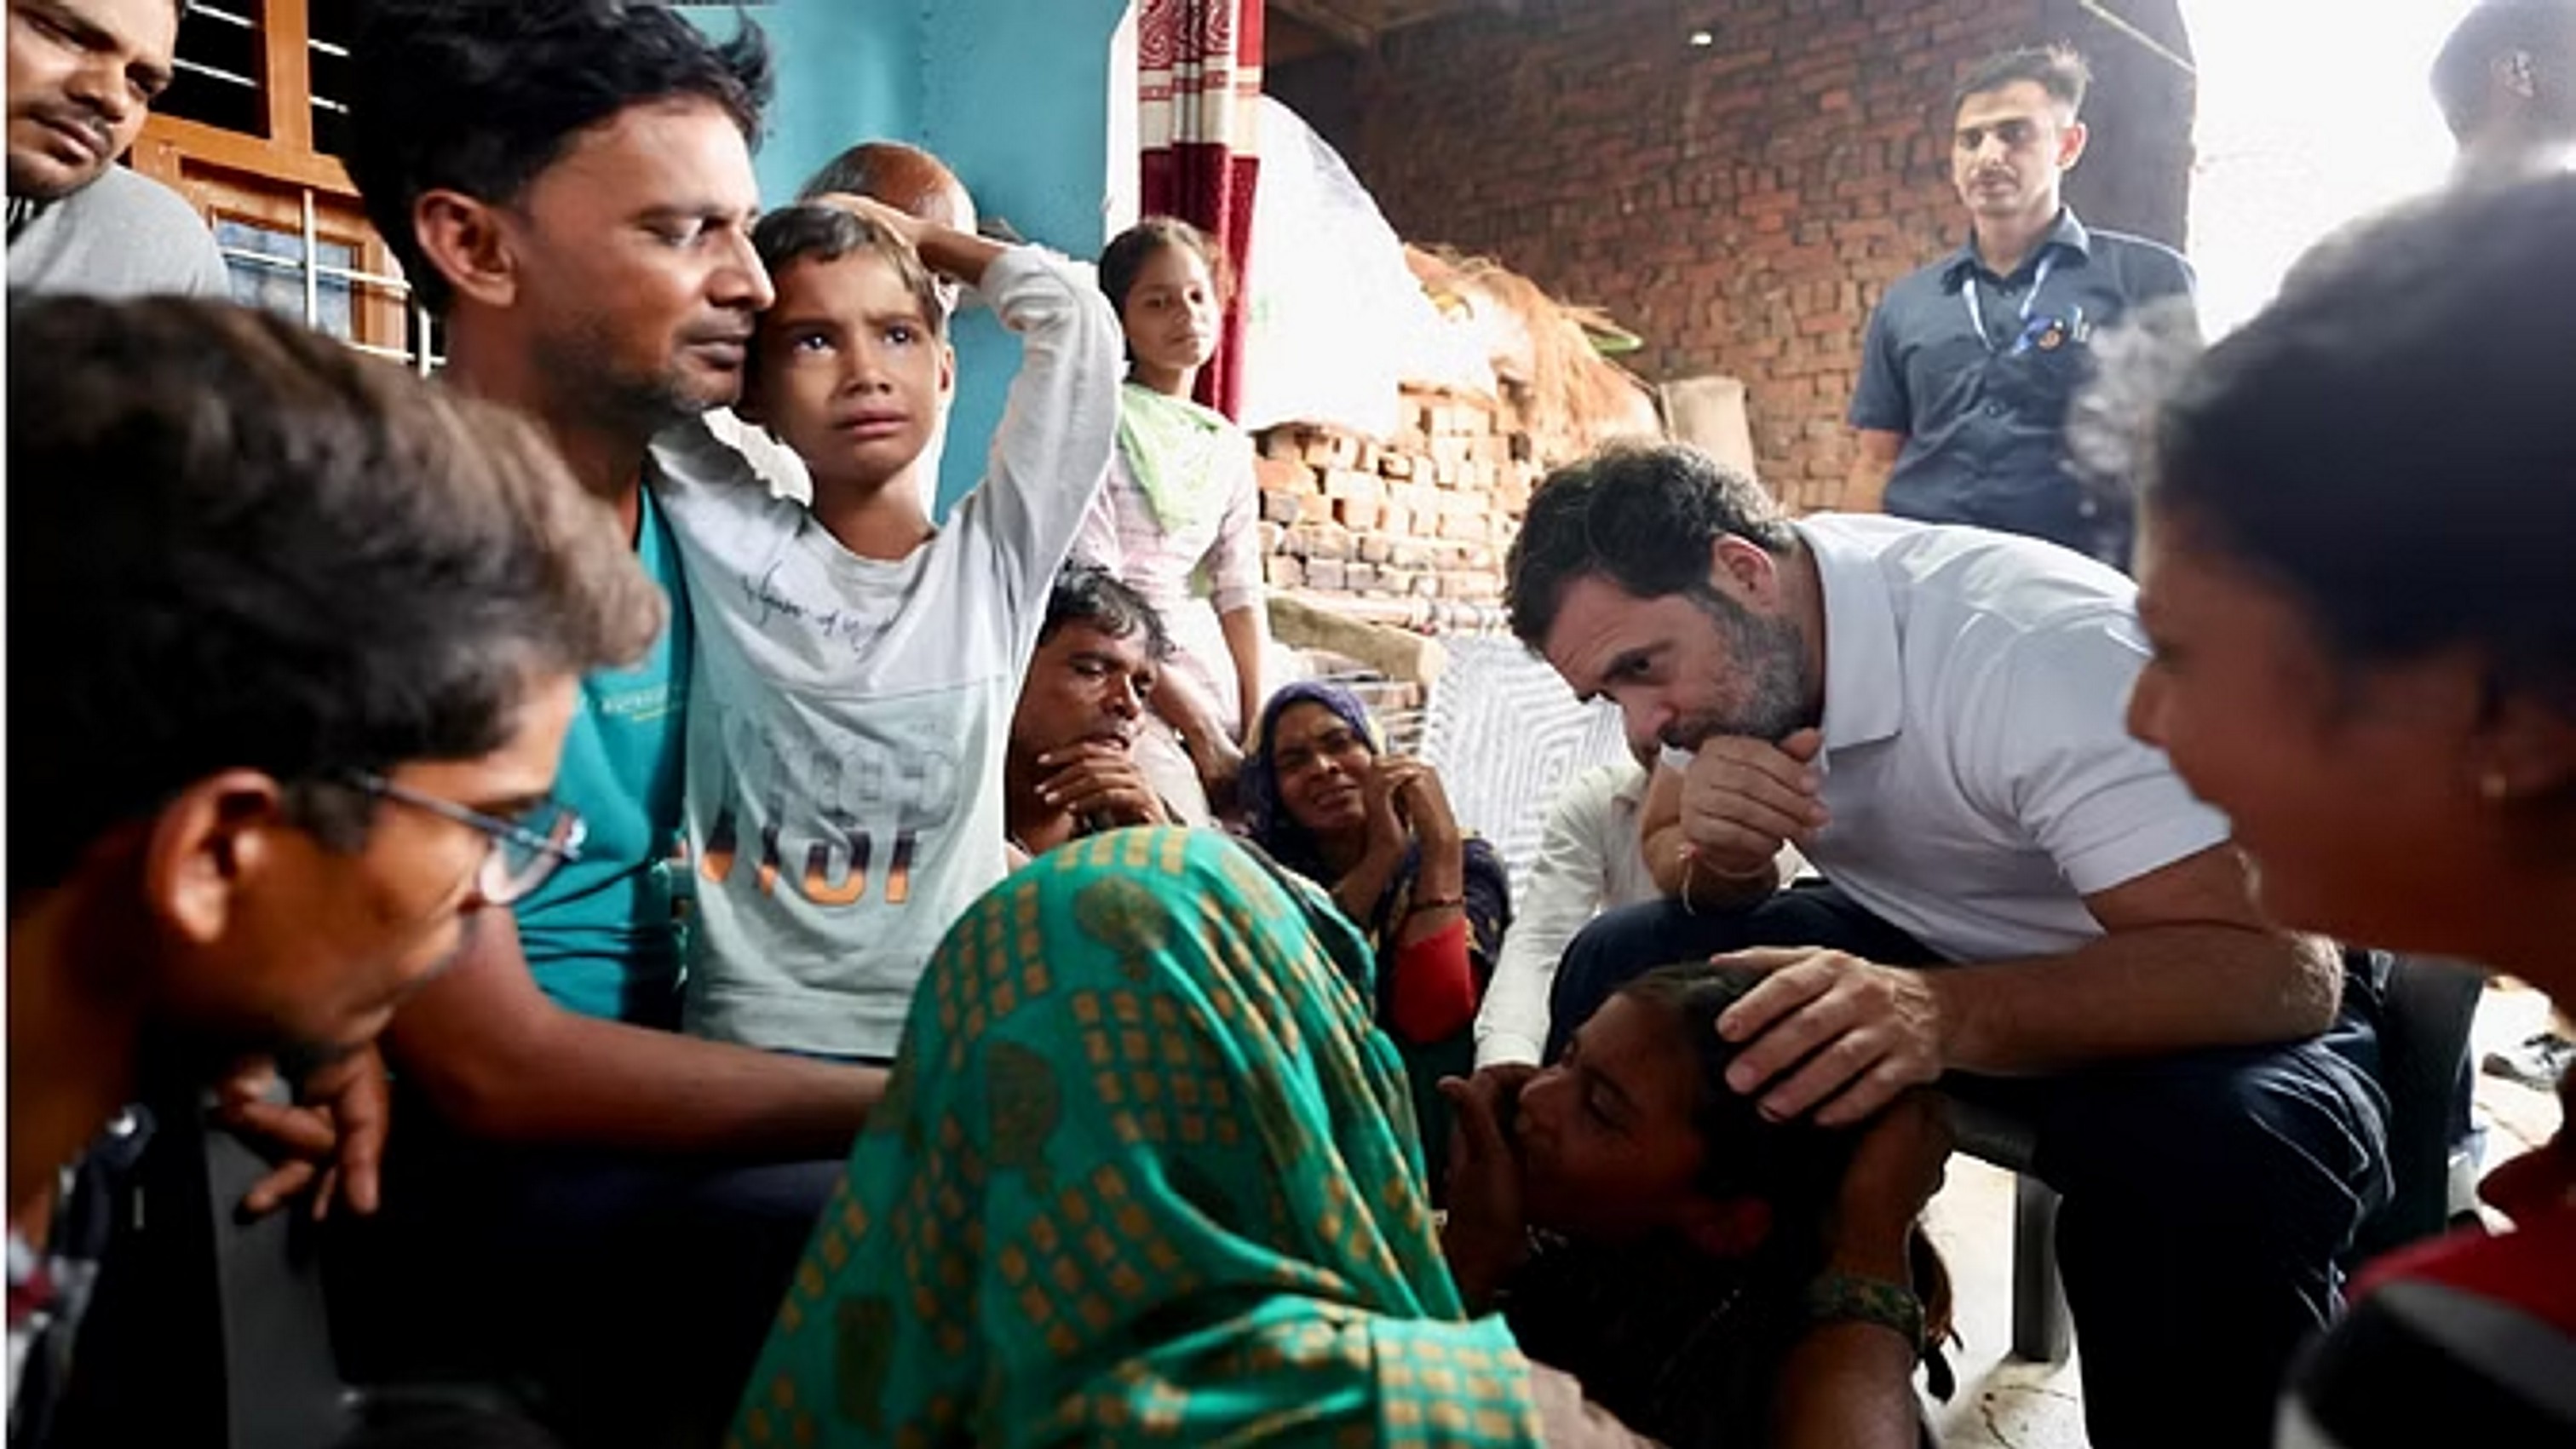  हाथरस में पीड़ितों के घर पहुंचे कांग्रेस नेता राहुल गांधी, परिजनों से मिलकर दी सांत्वना